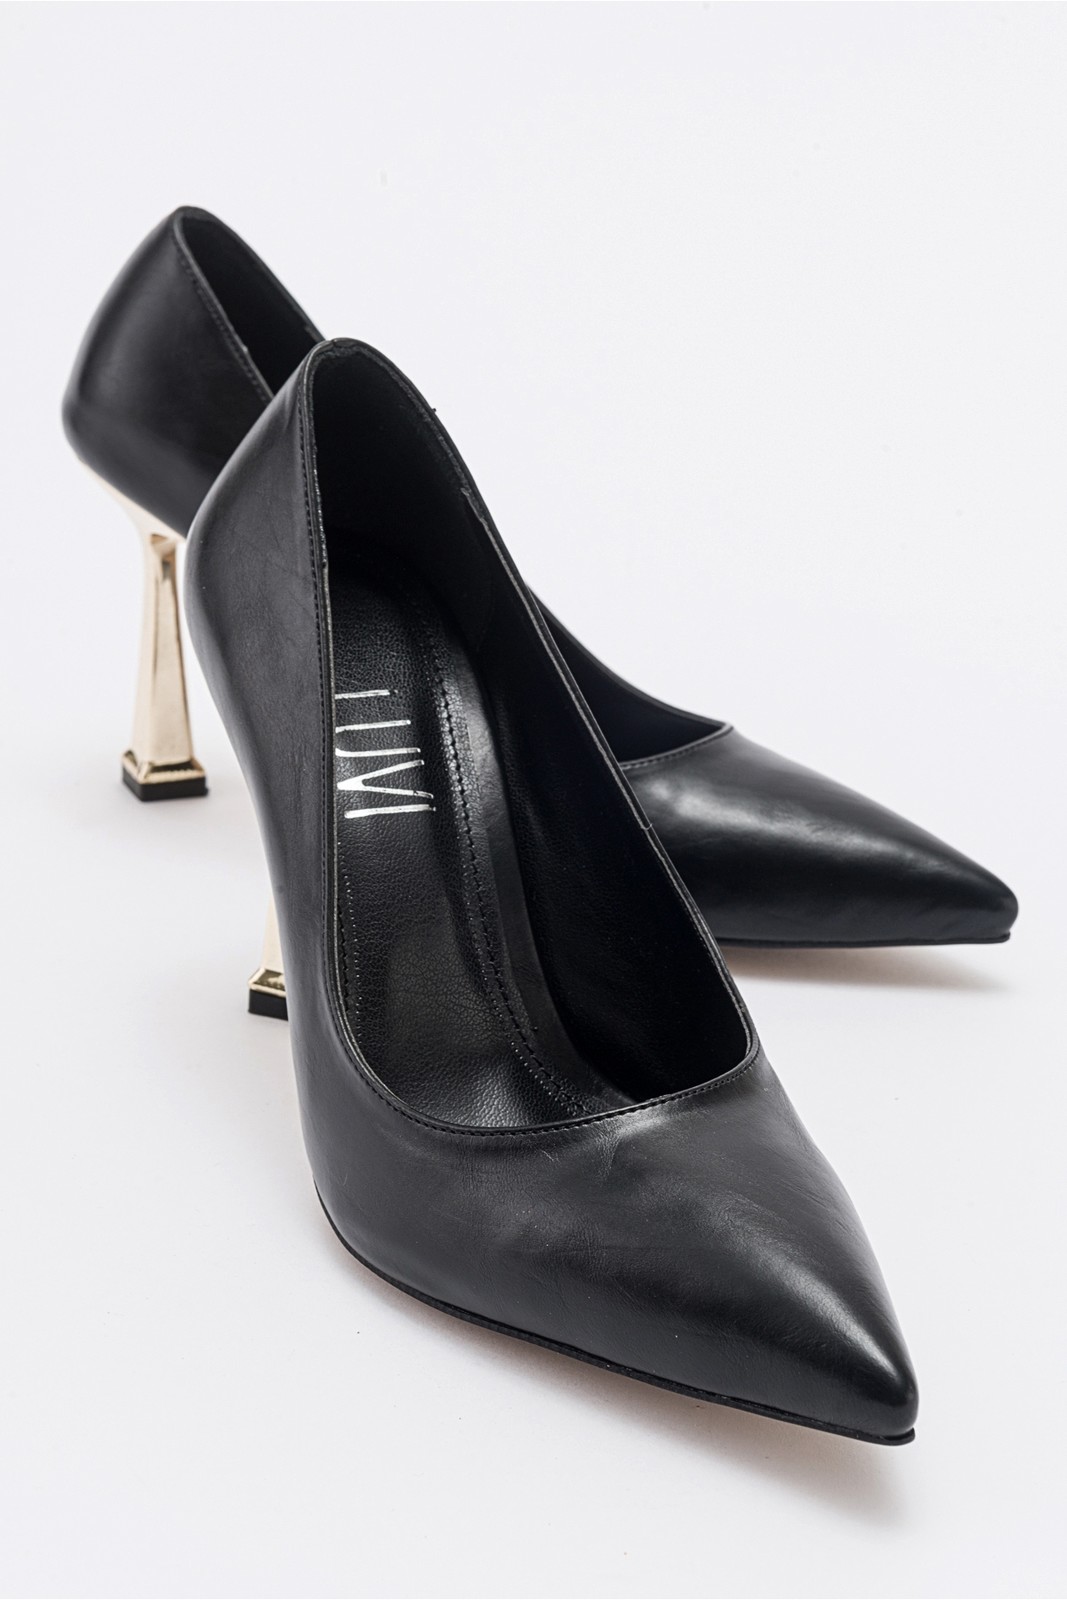 LuviShoes MERLOT Black Skin Women's Heeled Shoes